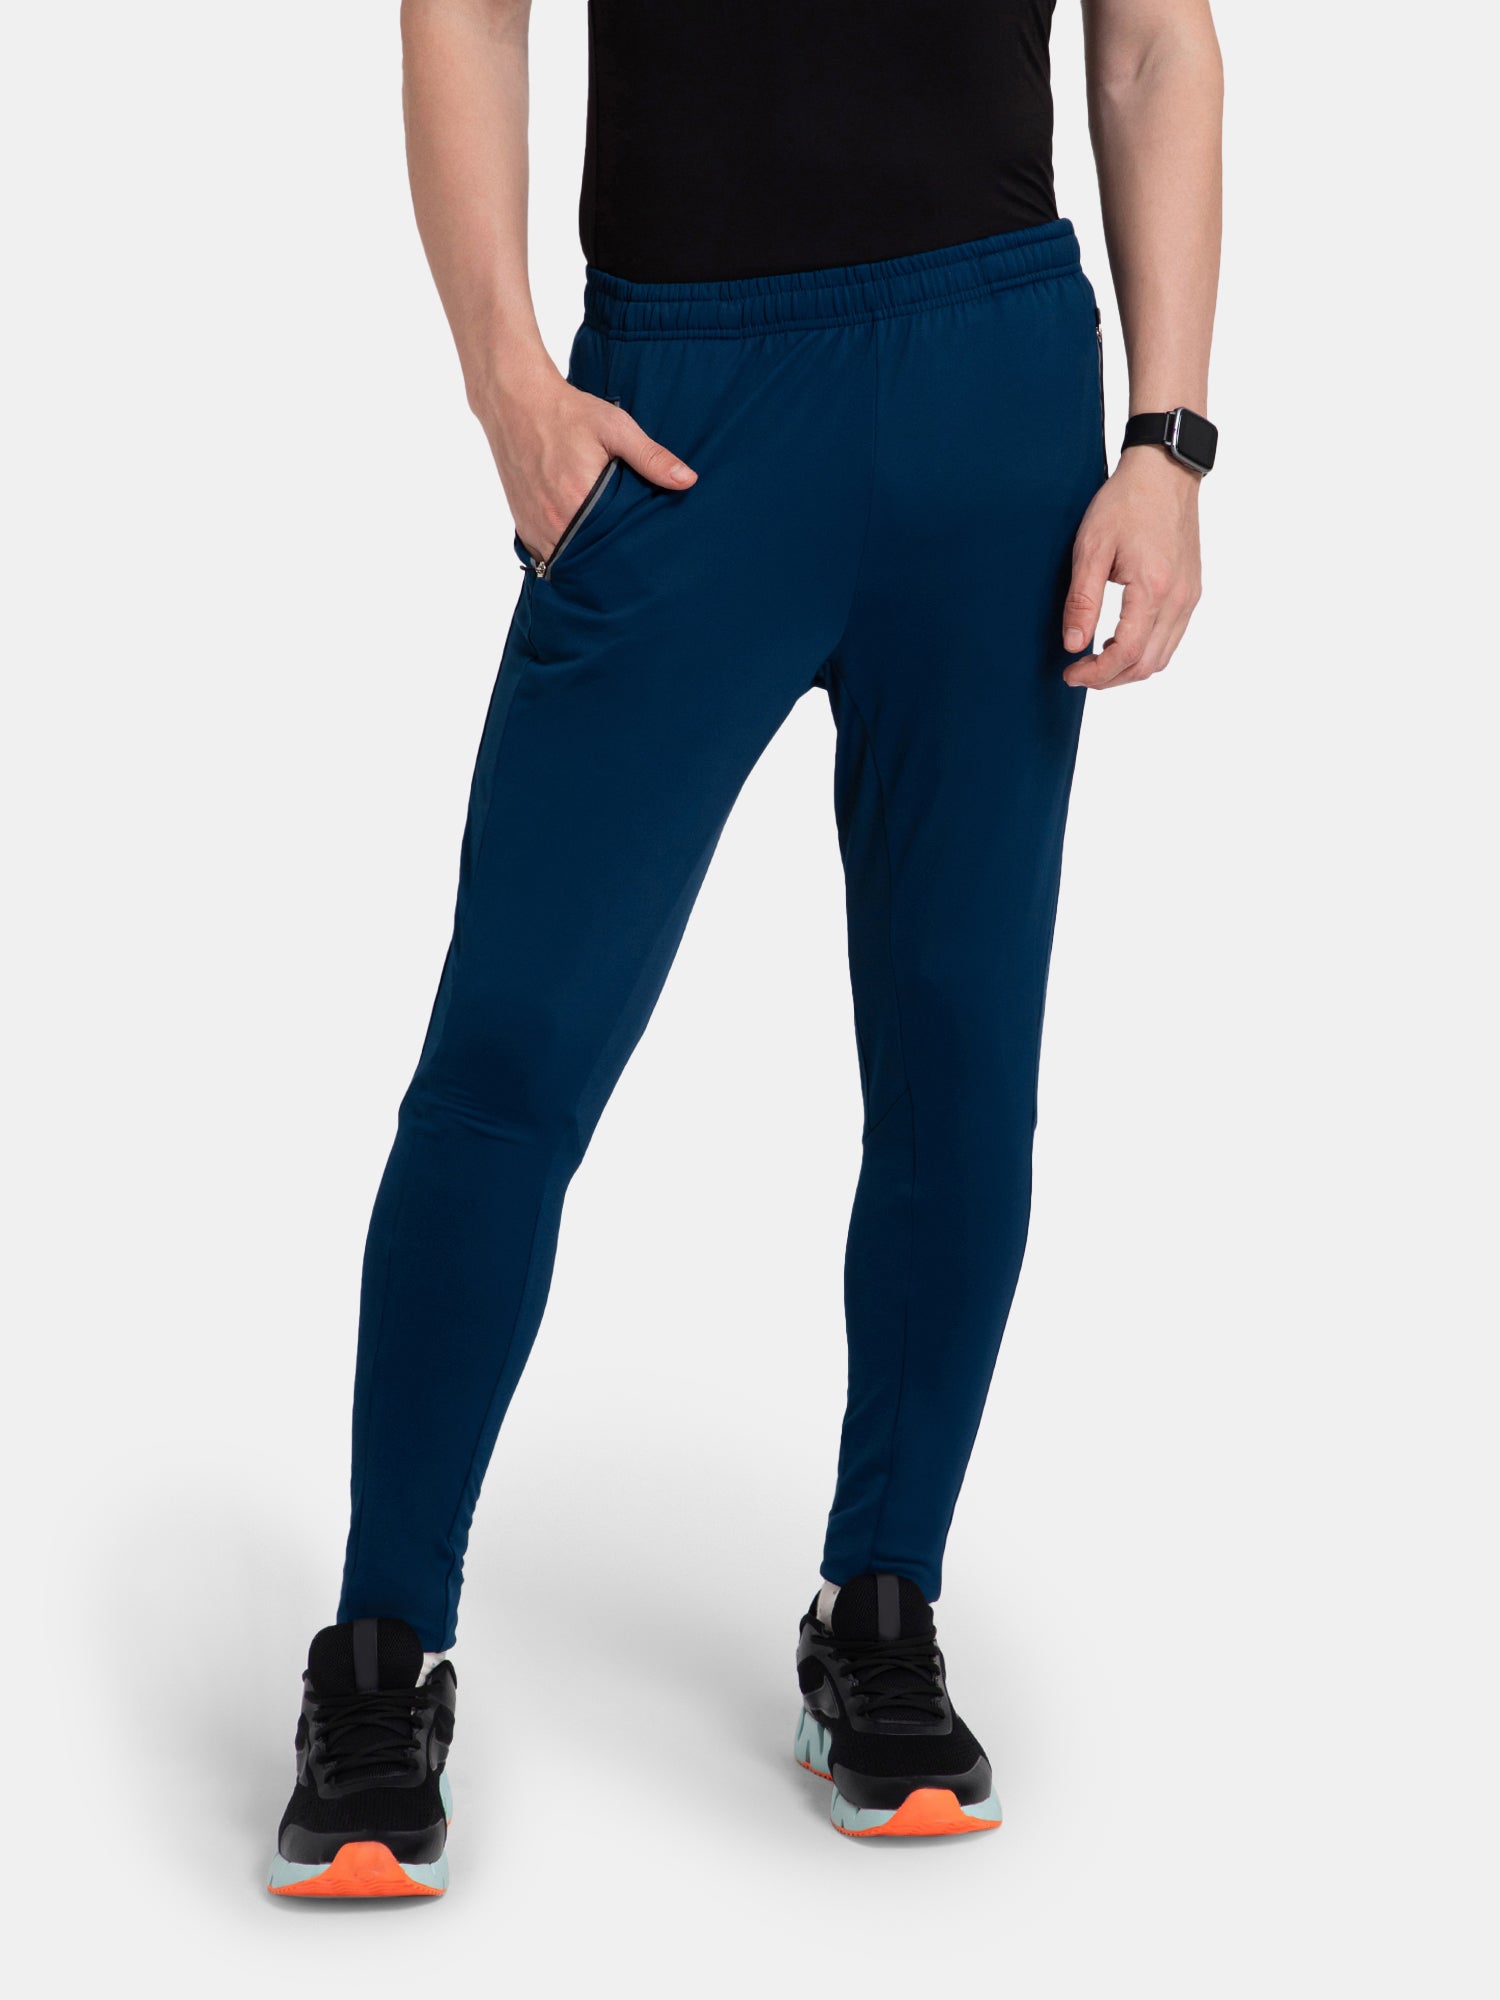 Buy Men Grey Solid Active Wear Track Pants Online - 232486 | Van Heusen